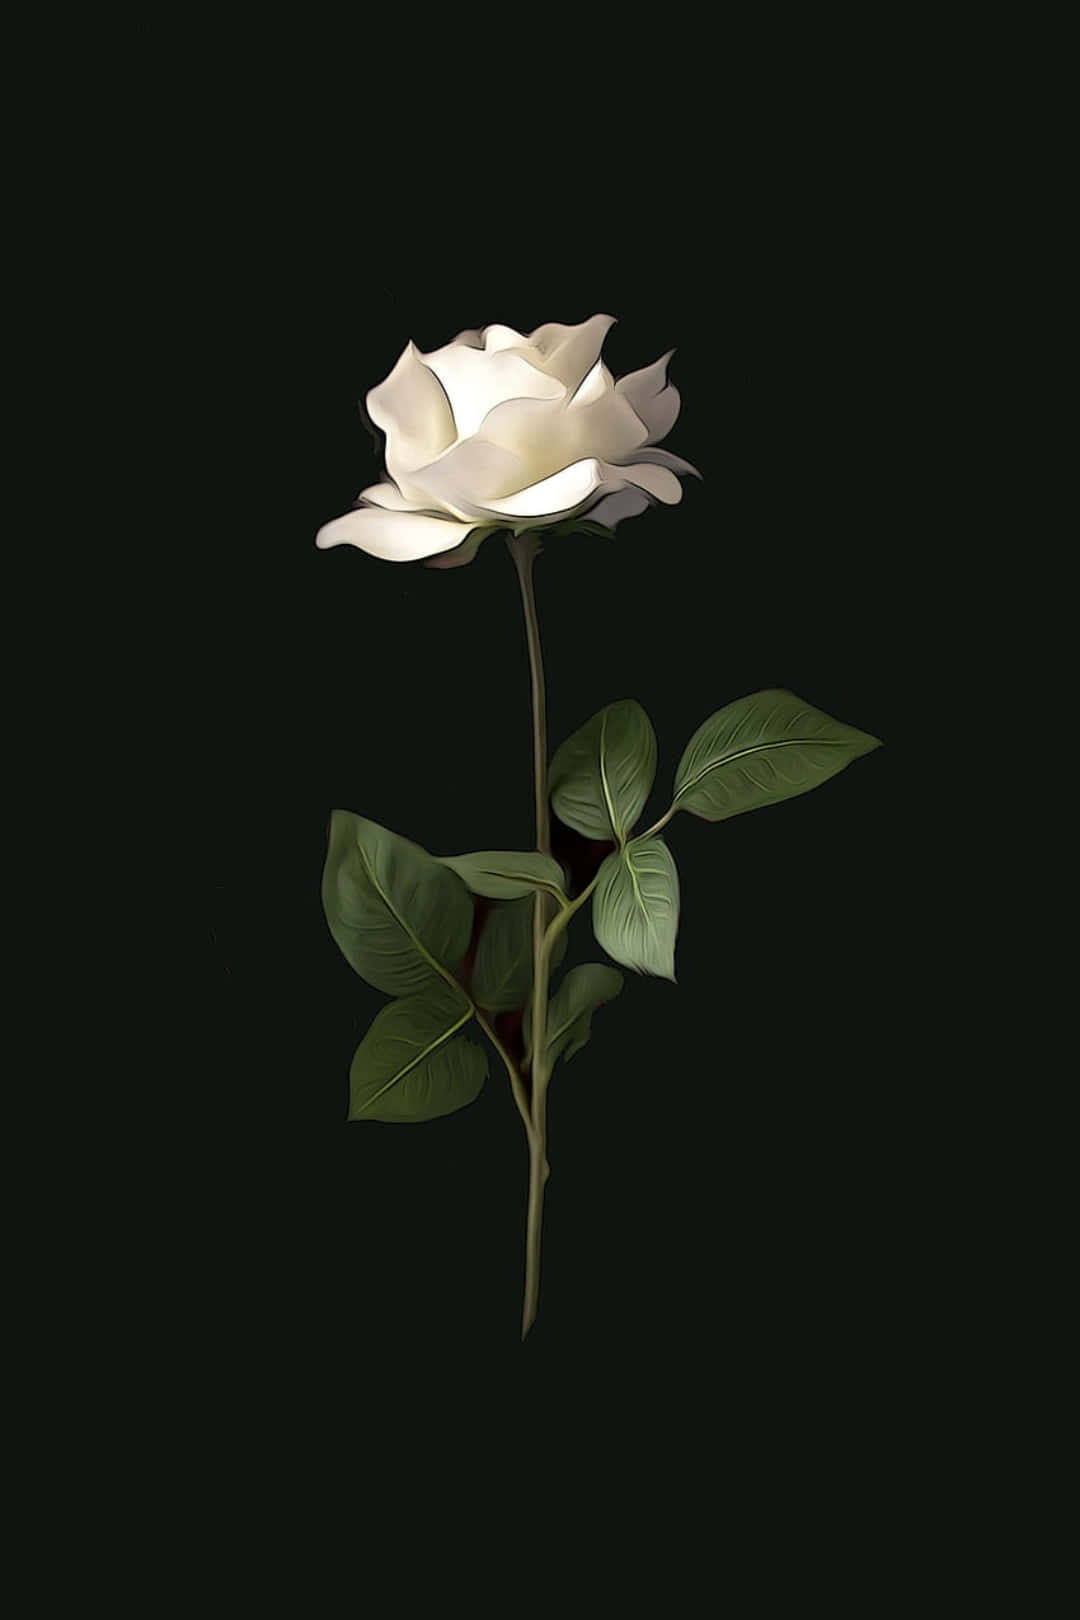 Blumeniphone Weiße Rose Dunkle Fotografie Bild